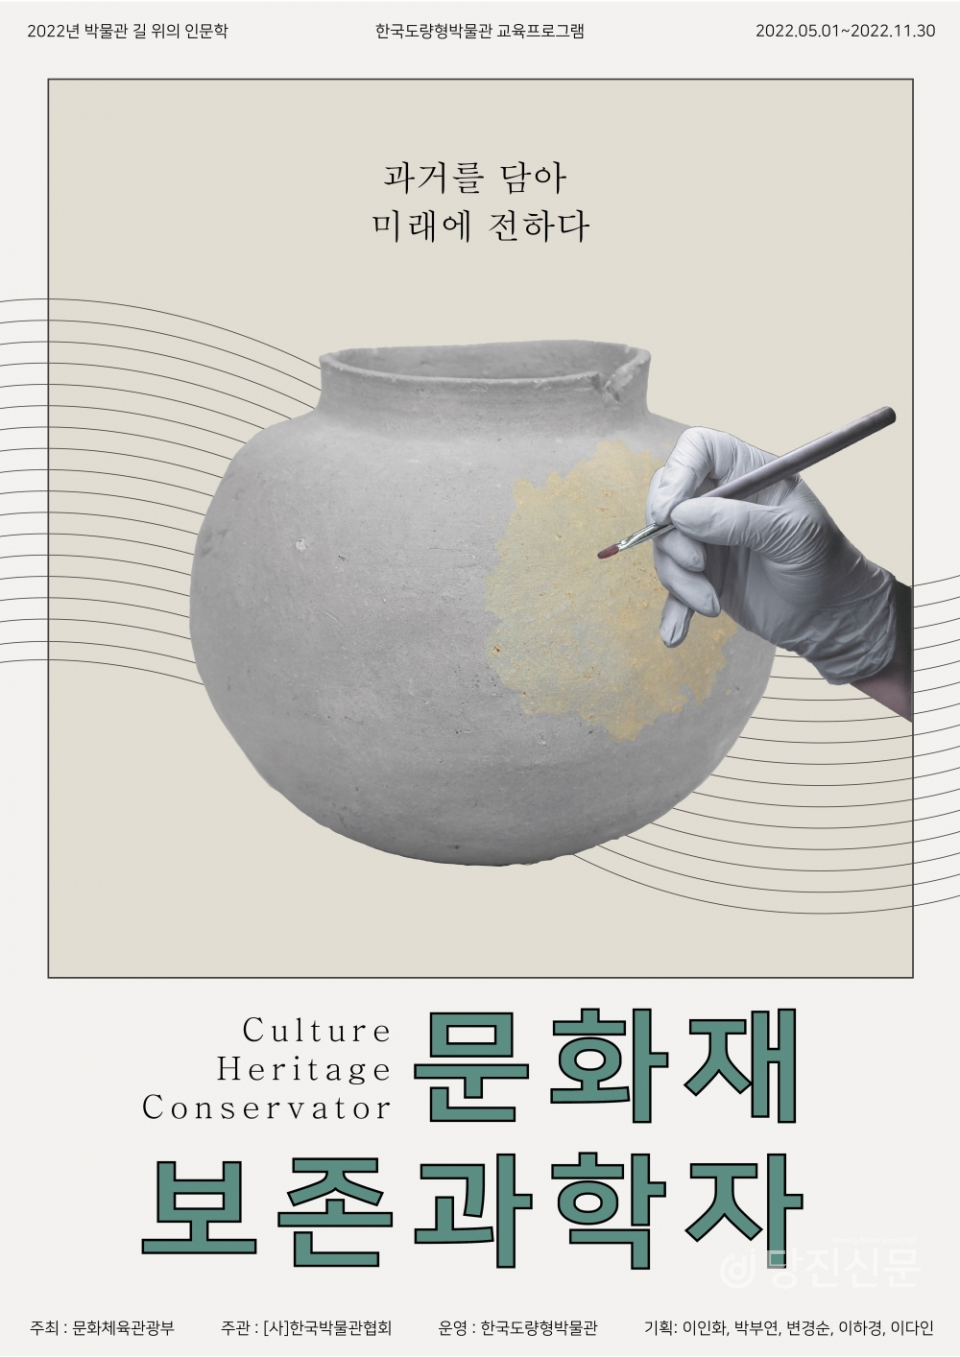 한국도량형박물관에서 학생들이 문화재 보존과학자가 되어 한국의 문화유산의 가치를 알아보고 후대에 어떻게 전할 것인지 직접 체험해보는 교육 프로그램인 ‘문화재 보존과학자’를 11월 30일까지 진행한다. ⓒ한국도량형박물관 제공